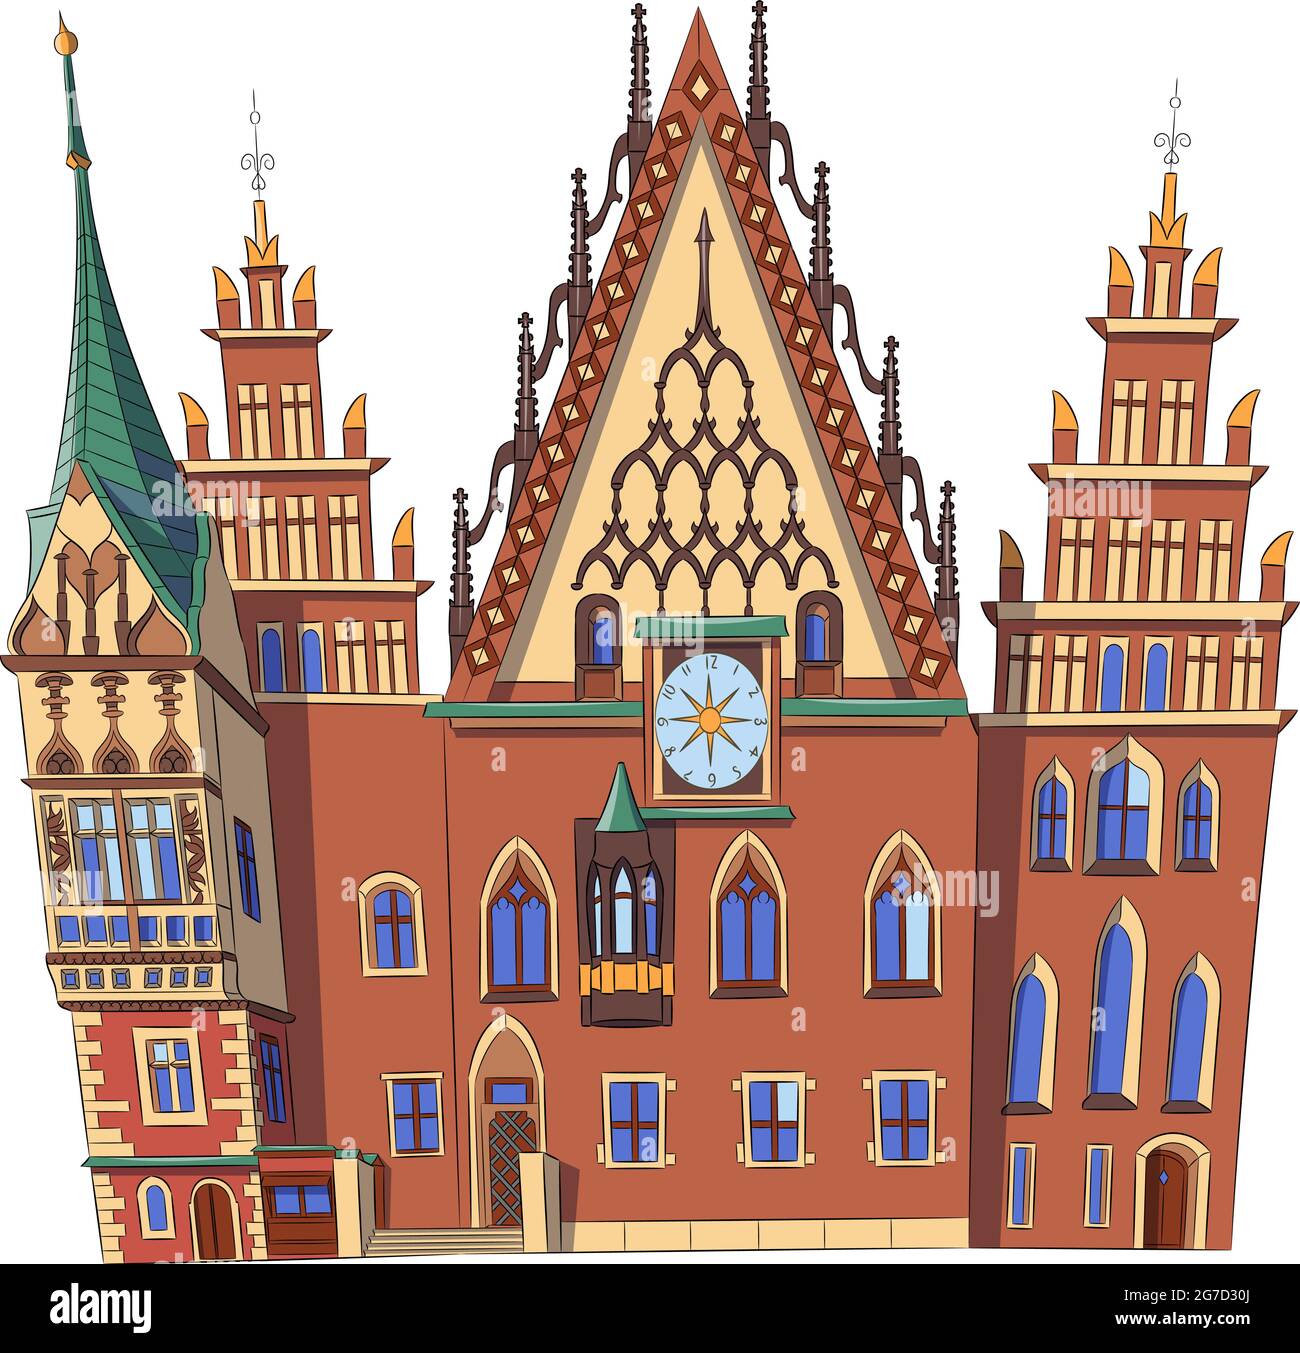 Belle vieille mairie médiévale sur la place du marché. Pologne. Wroclaw. Illustration vectorielle. Illustration de Vecteur